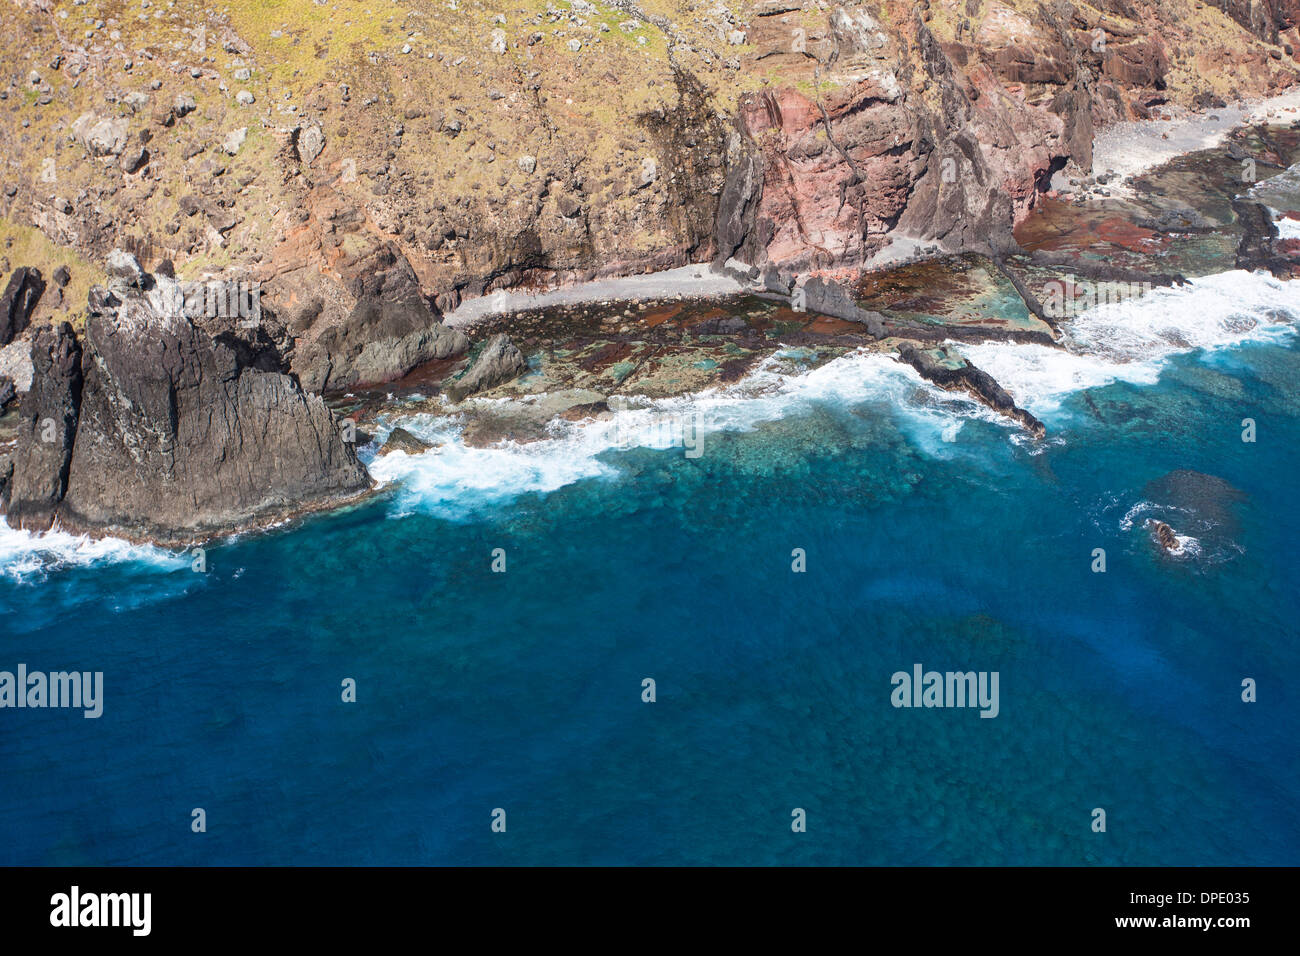 The aerial view of Trindade and Martins Vaz archipelago coast Stock Photo